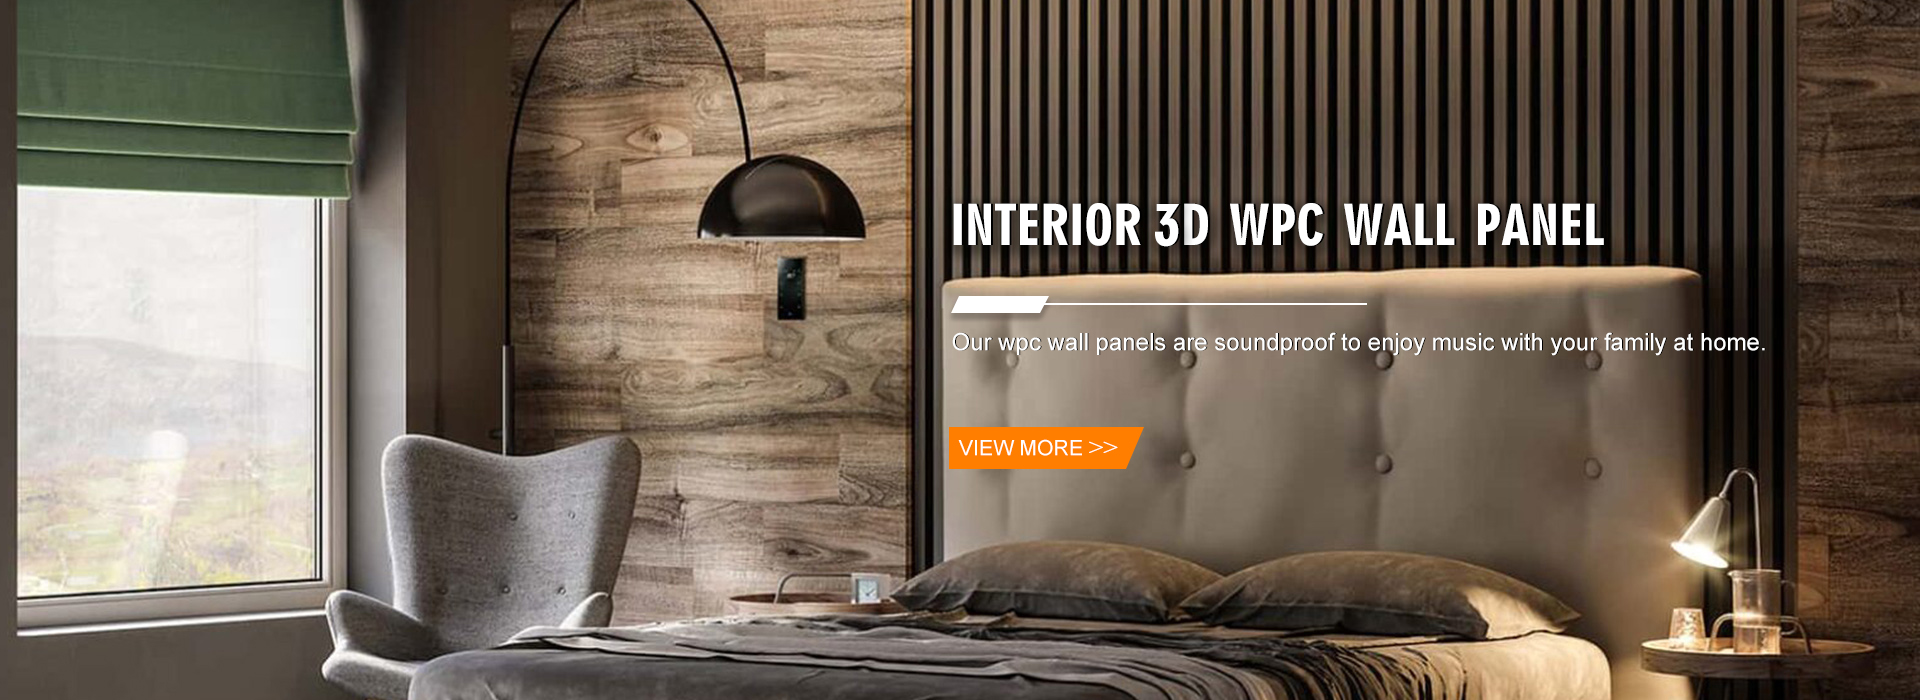 Bảng điều khiển tường WPC 3D nội thất